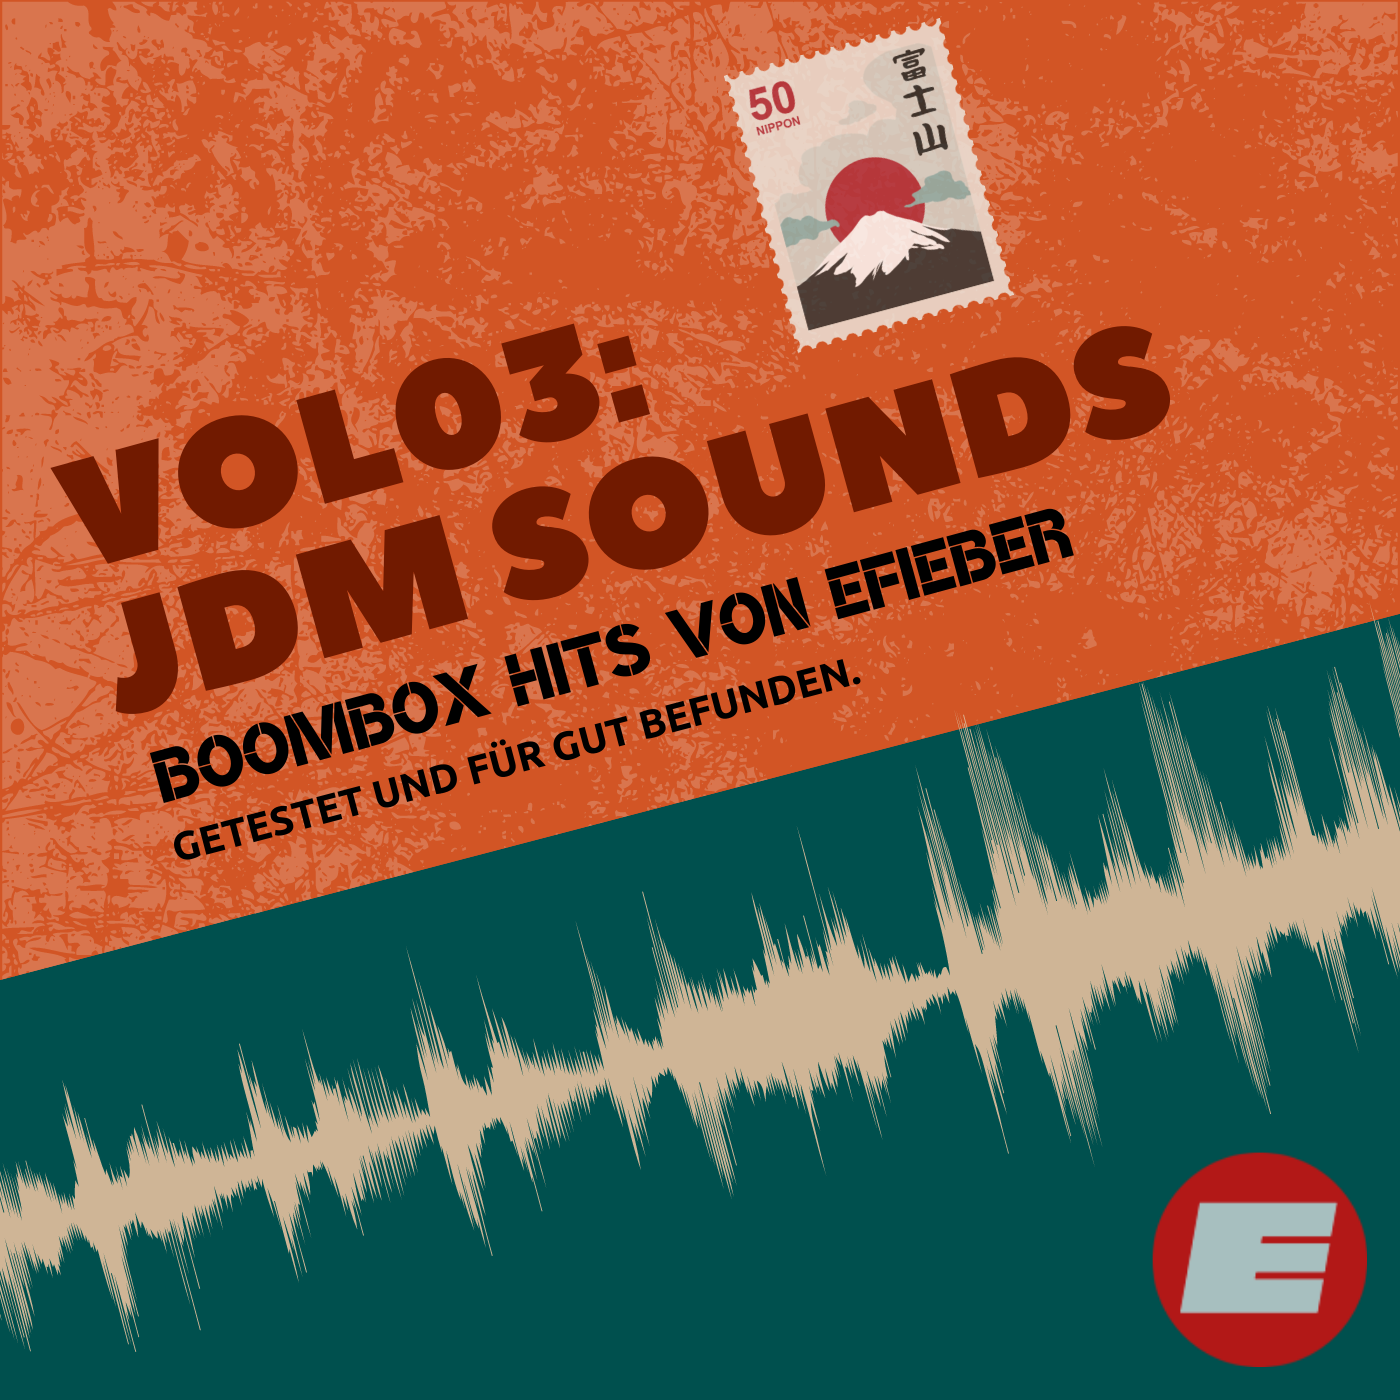 BOOMBOX Sounds Vol03: JDM Sounds (Download - siehe Produktbeschreibung)